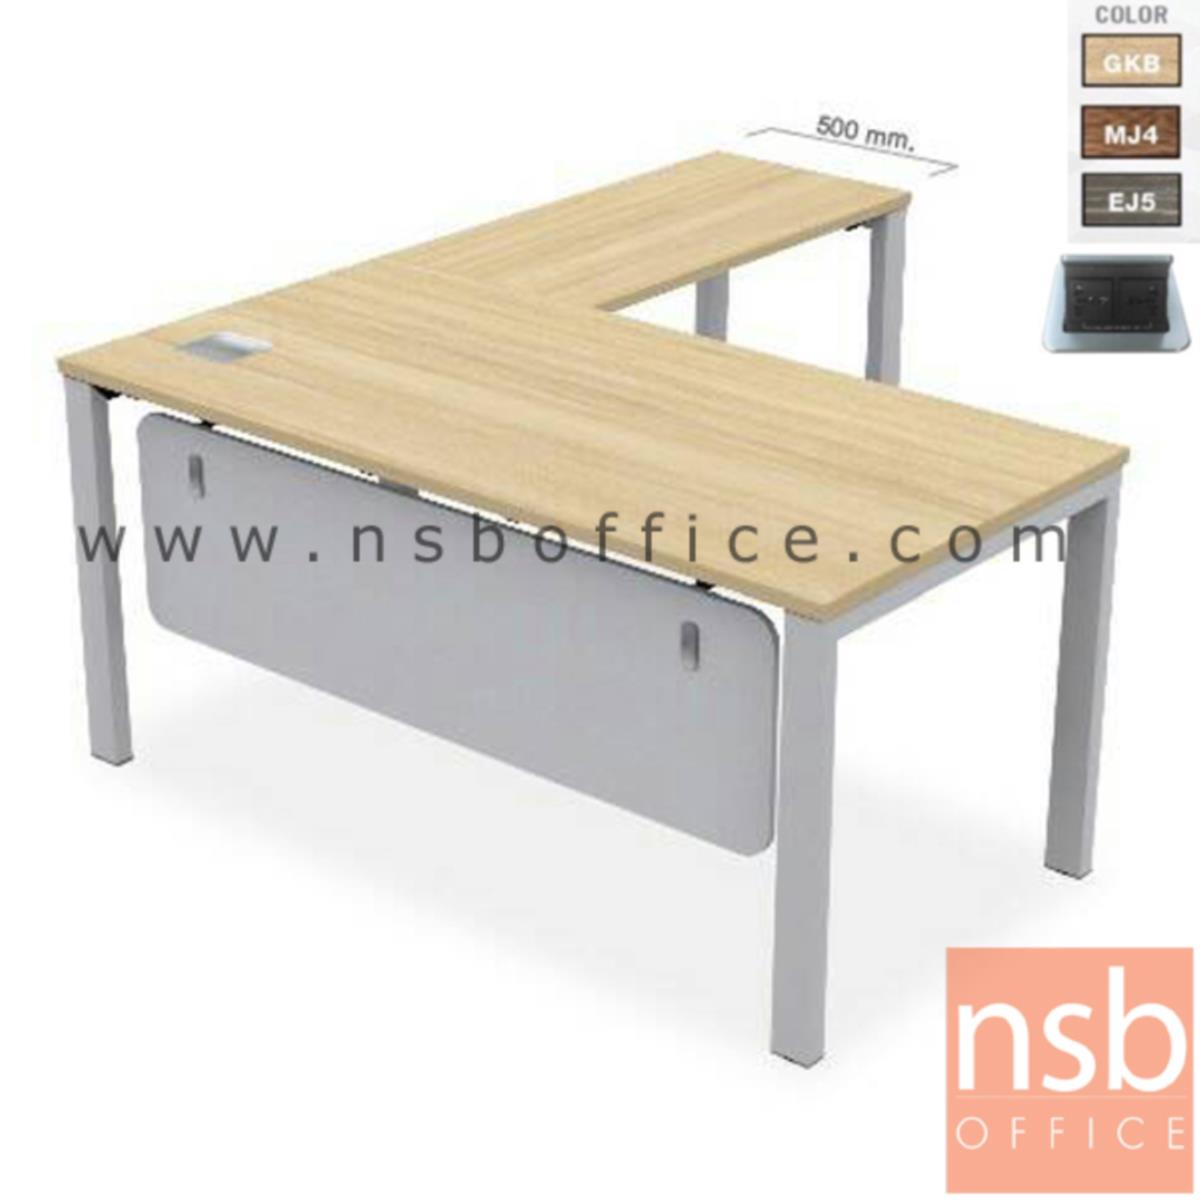 A16A066:โต๊ะทำงานตัวแอล   ขนาด 160W cm. พร้อมป๊อปอัพ ขาเหล็ก